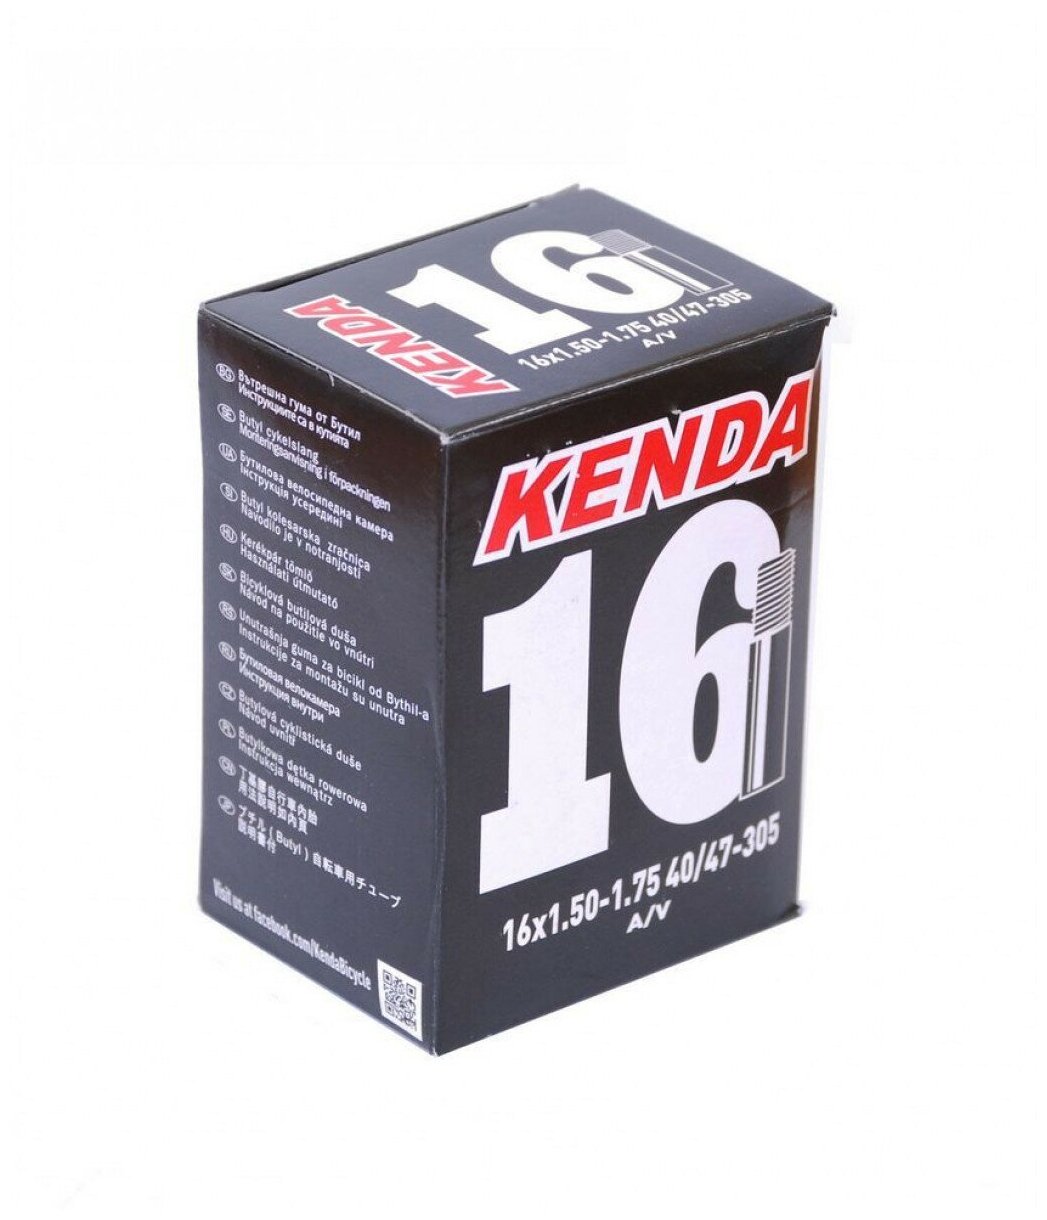 Камера Kenda 16"x1.50 - 1.75 автониппель